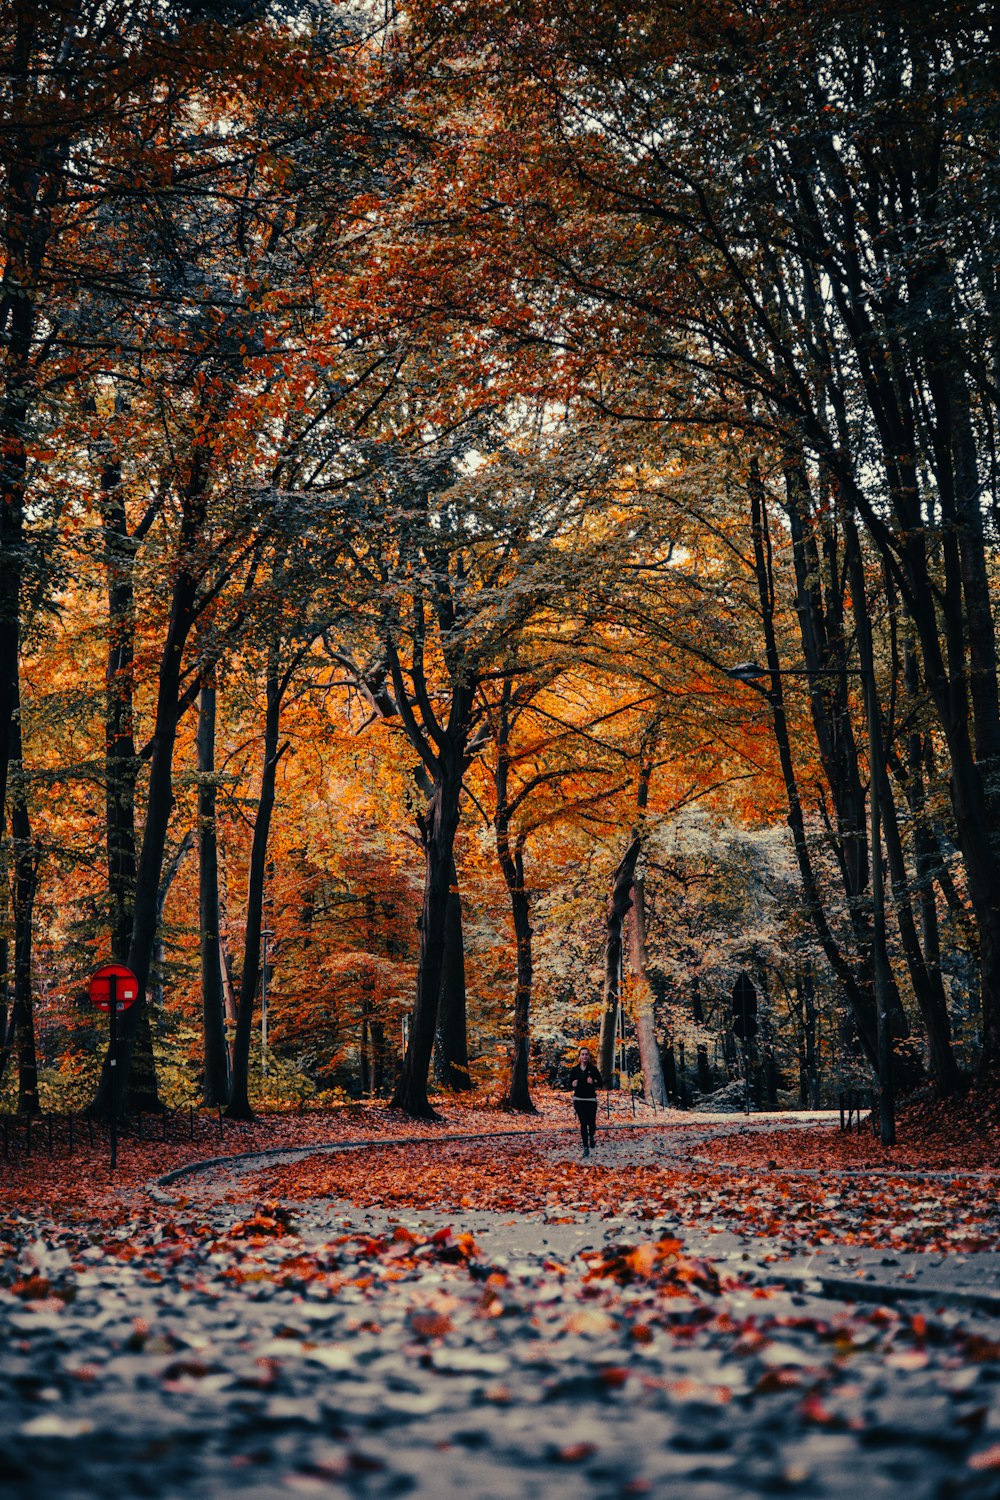 オレンジ色の葉のある木々のある公園を歩いている人